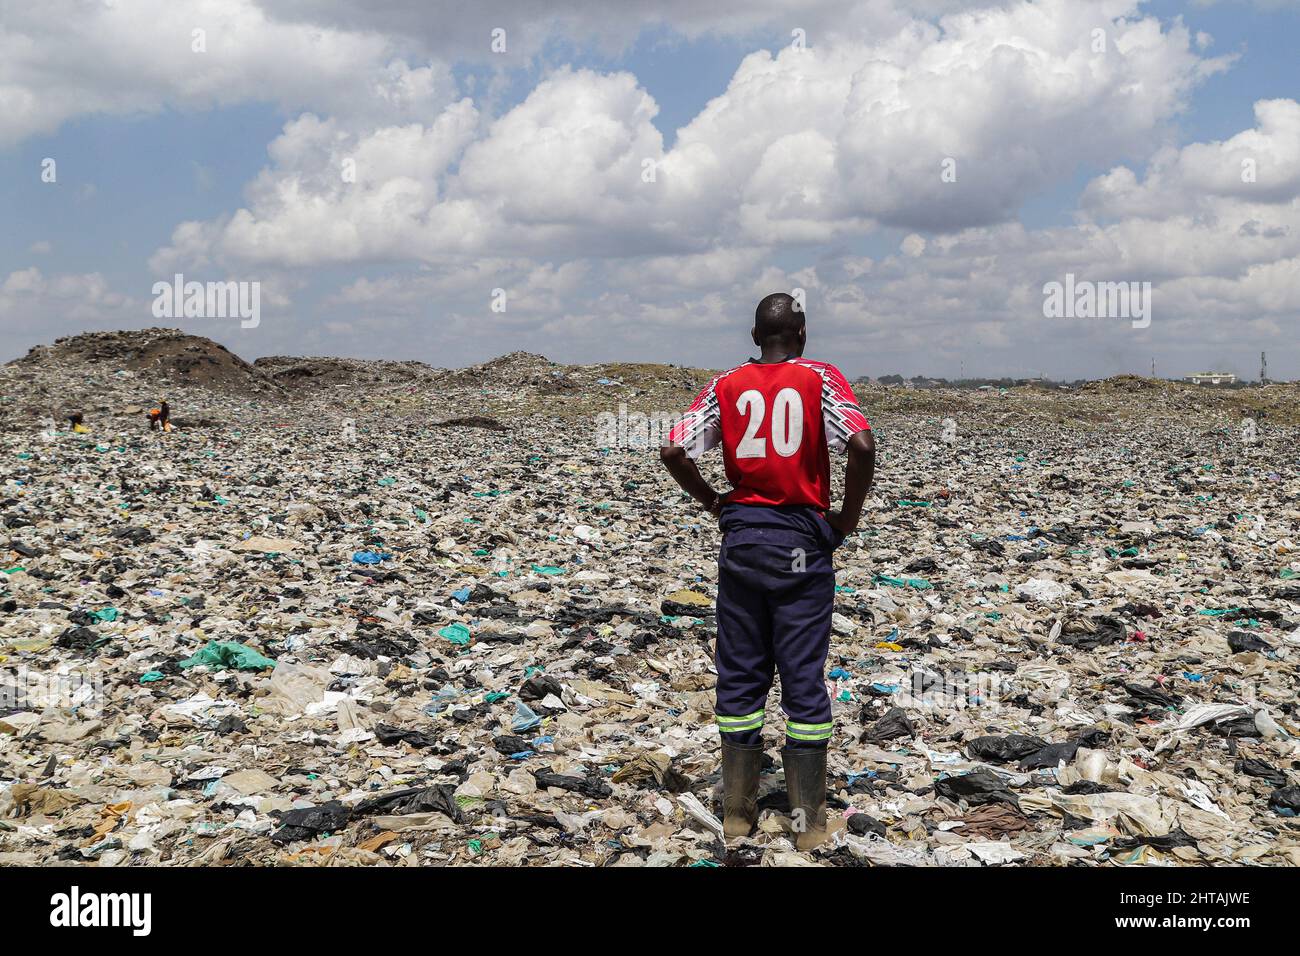 Un hombre en una camiseta roja está parado en los escombros plásticos en el sitio de descarga de Dandora. Las discusiones para trazar un camino hacia adelante para un tratado mundial de plástico para abordar el creciente problema de la contaminación plástica comenzarán esta semana durante la Asamblea Ambiental de las Naciones Unidas UNEA 5,2). Con dos proyectos de resolución sobre la mesa, los países miembros decidirán o bien abordar el ciclo de vida completo de los plásticos propuesto por Rwanda y el Perú, o bien ir con el proyecto de resolución del Japón que hace hincapié en una mejor gestión de los desechos plásticos. Más de 50 países y grupos ambientales apoyan esta normativa Foto de stock